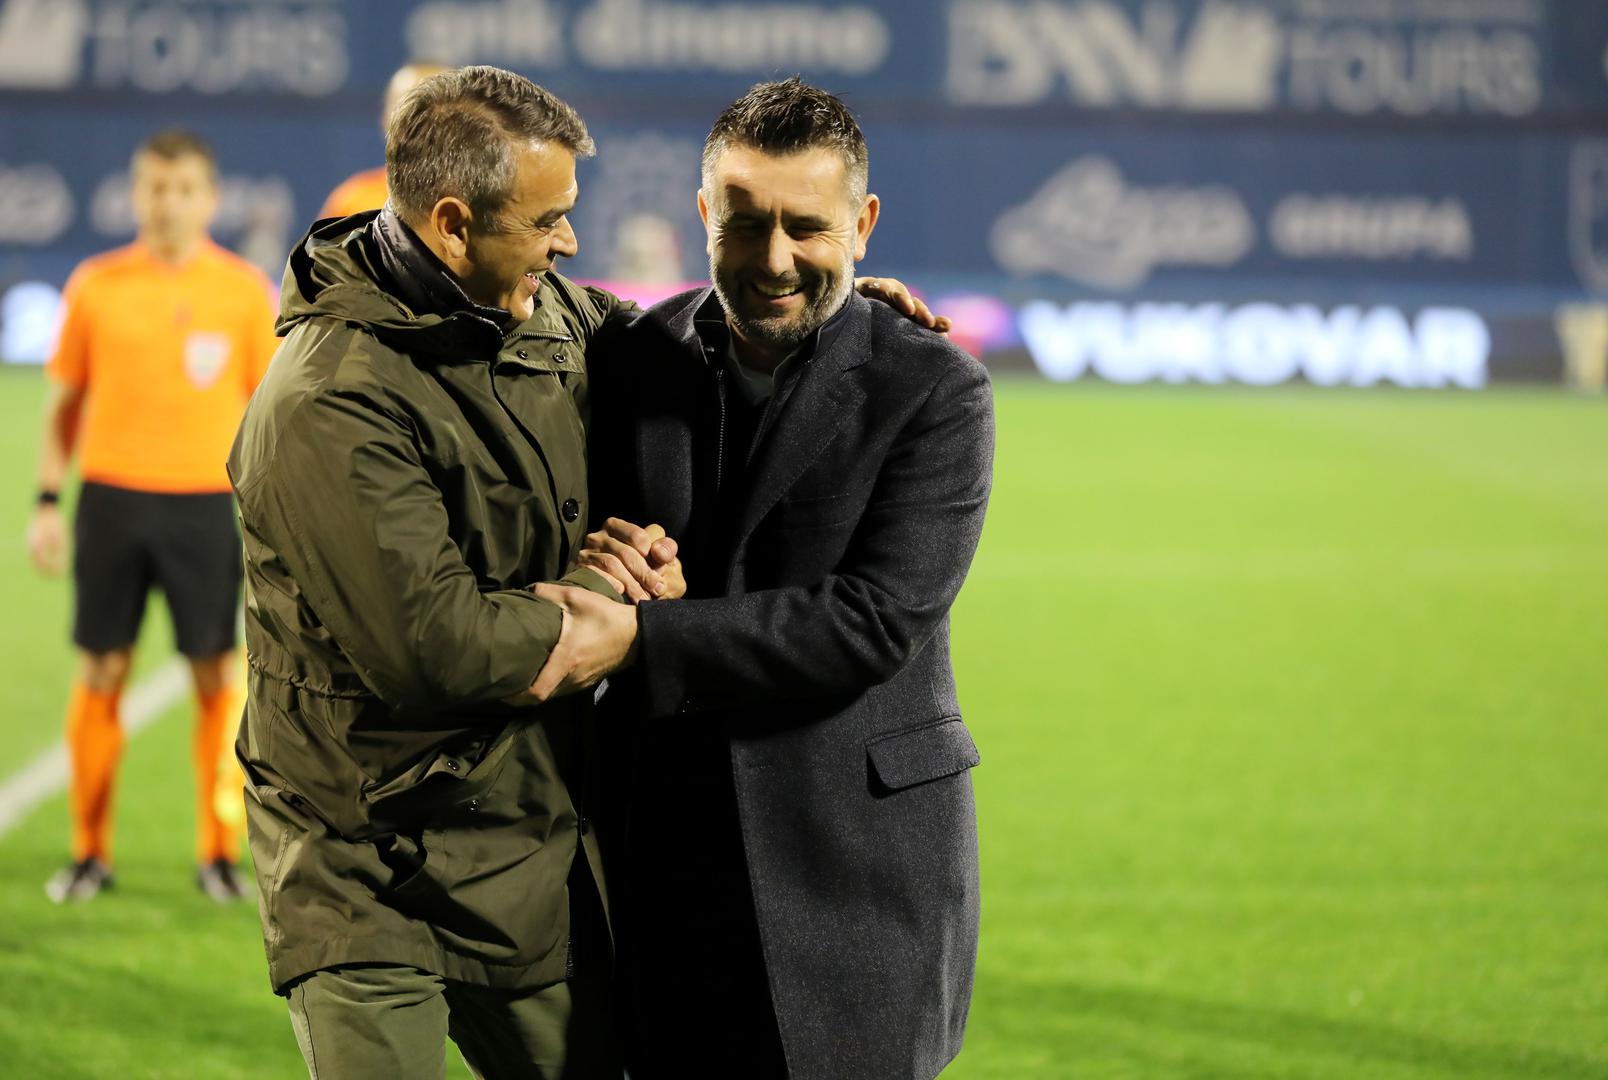 A treneri Nenad Bjelica i Damir Burić srdačno su se pozdravili uoči utakmice.